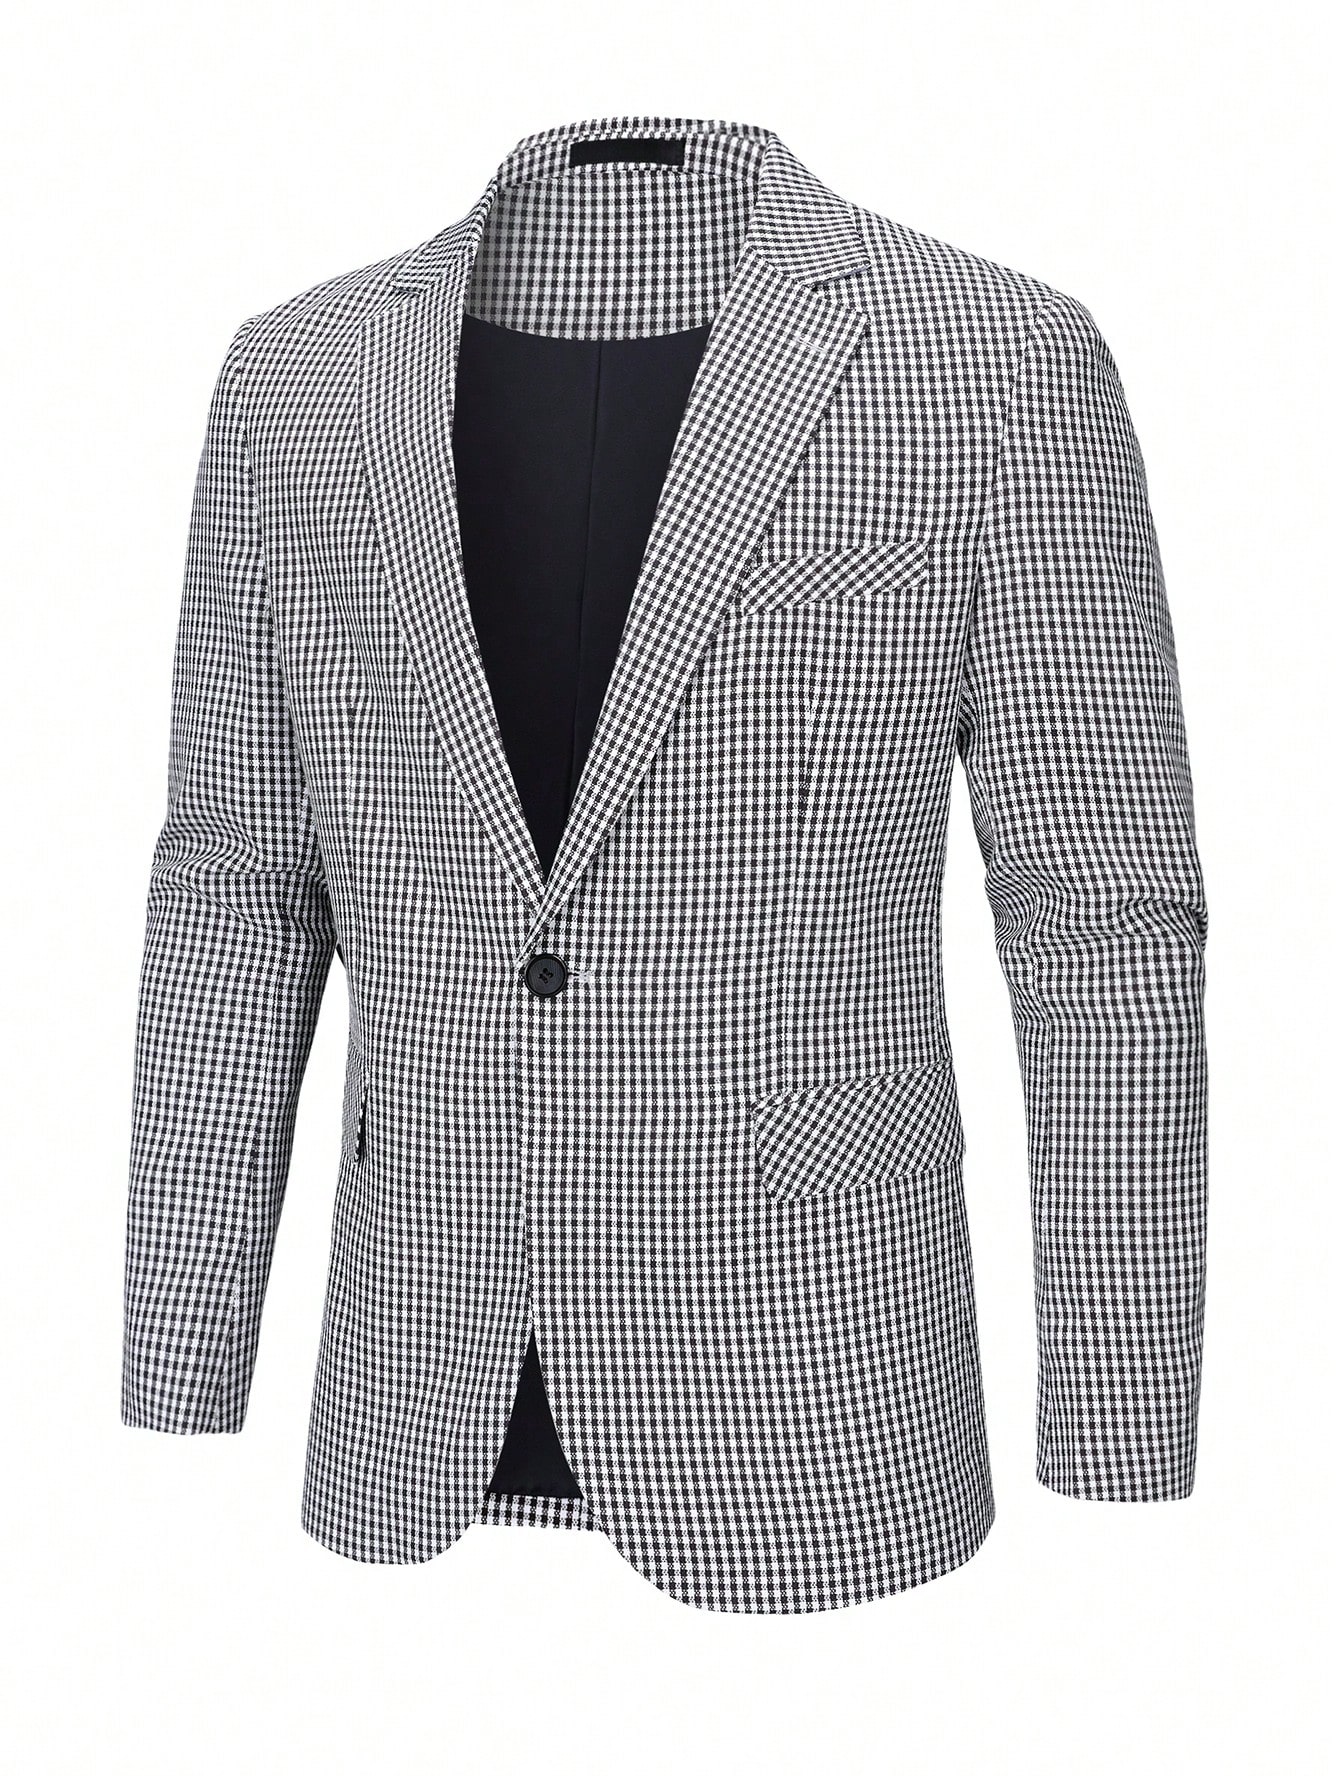 Мужской пиджак Manfinity Mode с клетчатым принтом и воротником с лацканами, черное и белое